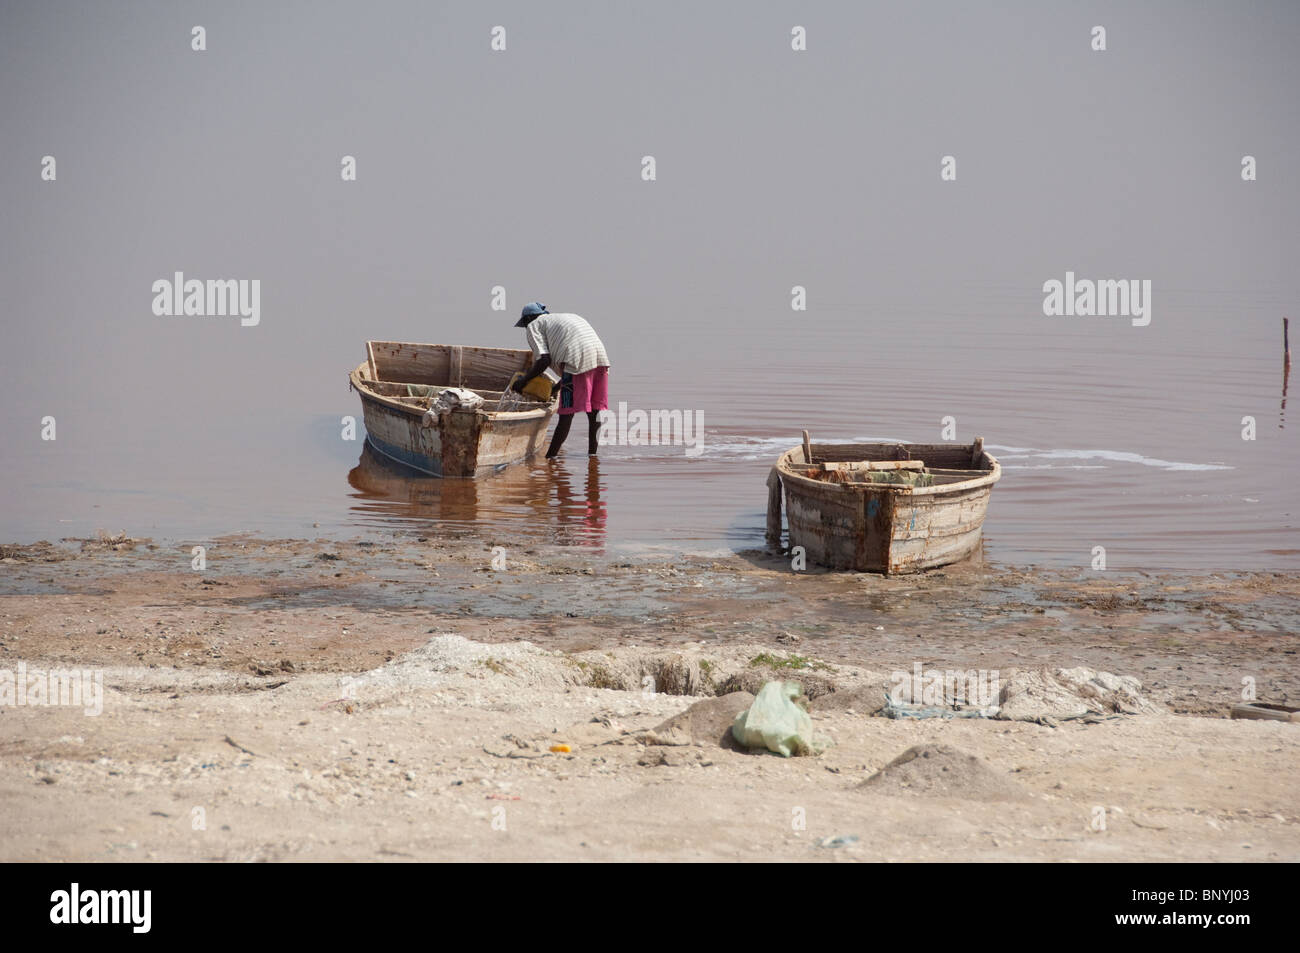 Afrique, Sénégal, Dakar. Le Lac Rose de Retba. La collecte de sel le long des côtes salées bateaux de Lac Retba. Banque D'Images